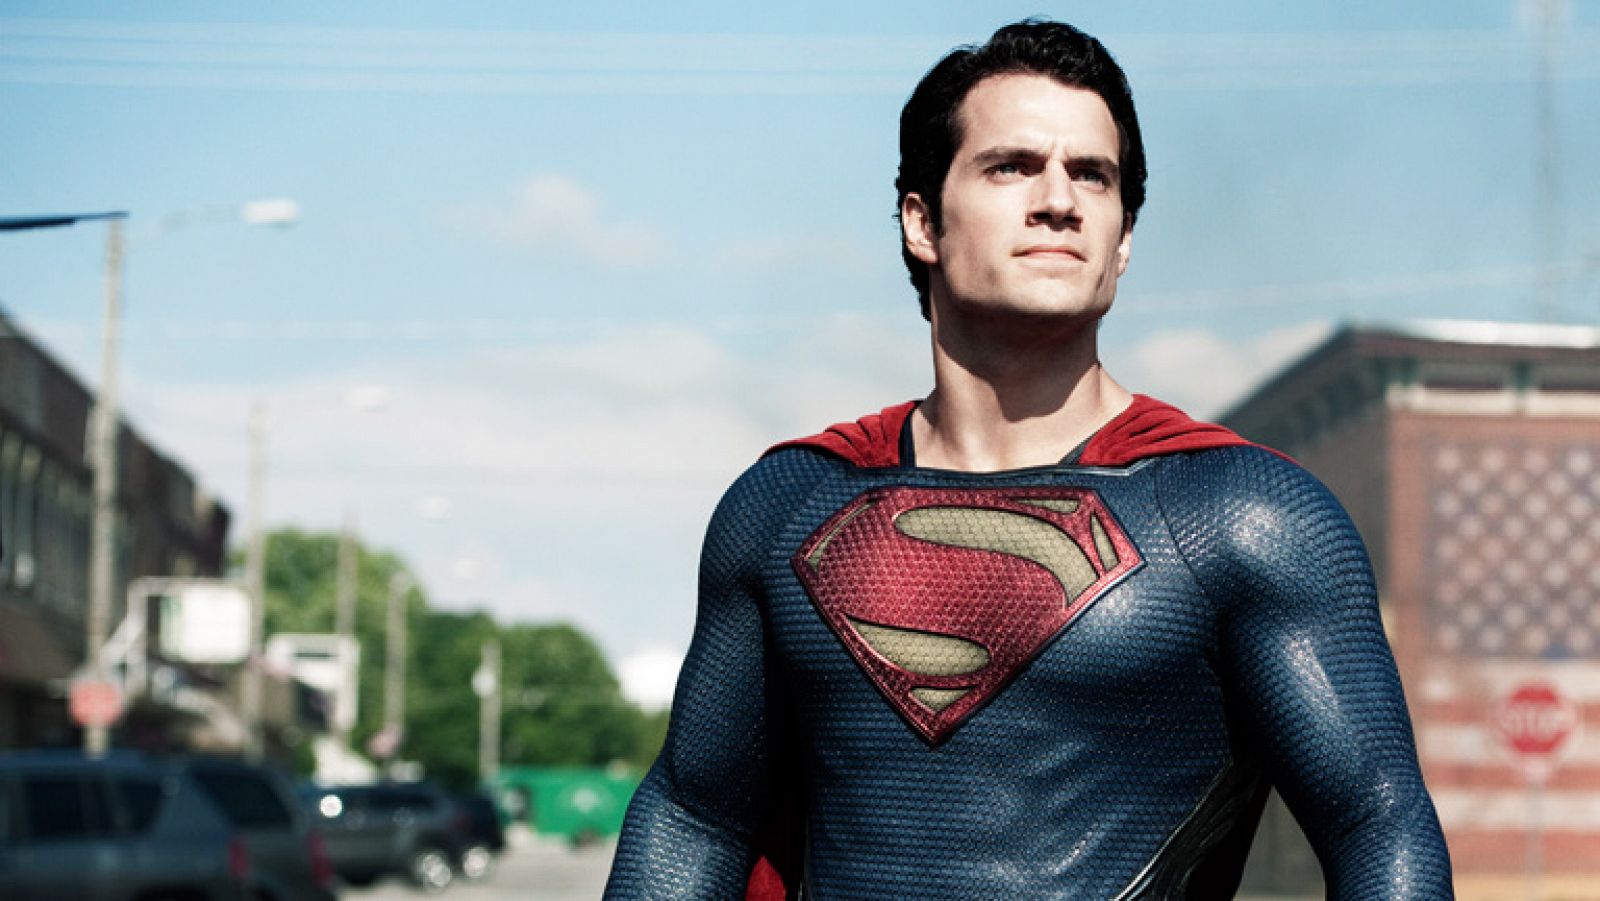 Cultura en Rtve.es: RTVE.es estrena el tráiler en español de 'El hombre de acero', el nuevo Superman | RTVE Play